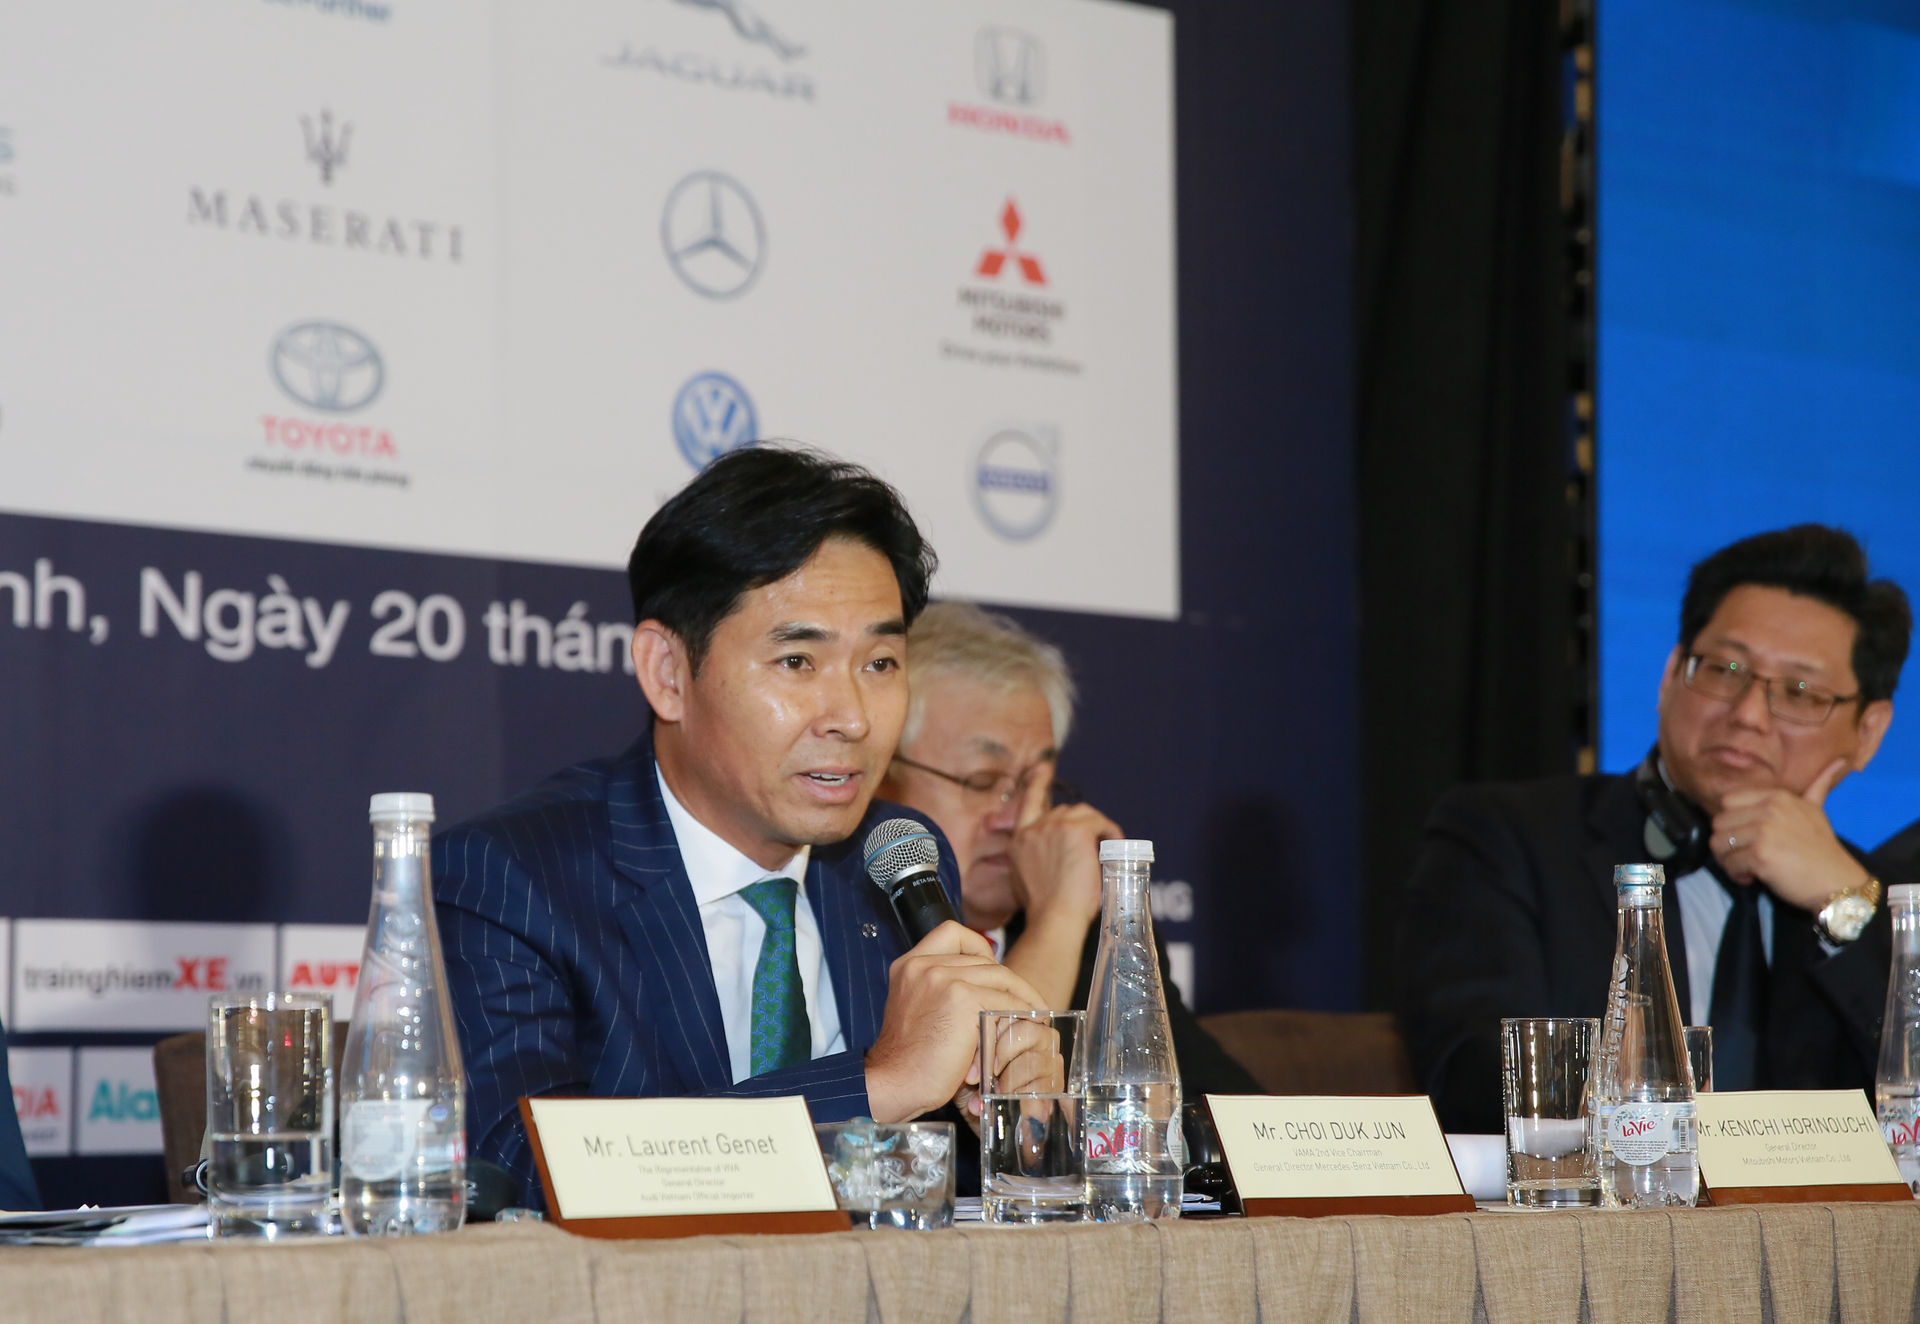 Hồi tháng 8/2018, ông Choi Duk Jun, Tổng giám đốc MBV đã từng giành thời gian riêng trong một cuộc họp báo chung của ngành xe để trả lời báo giới quanh vụ 